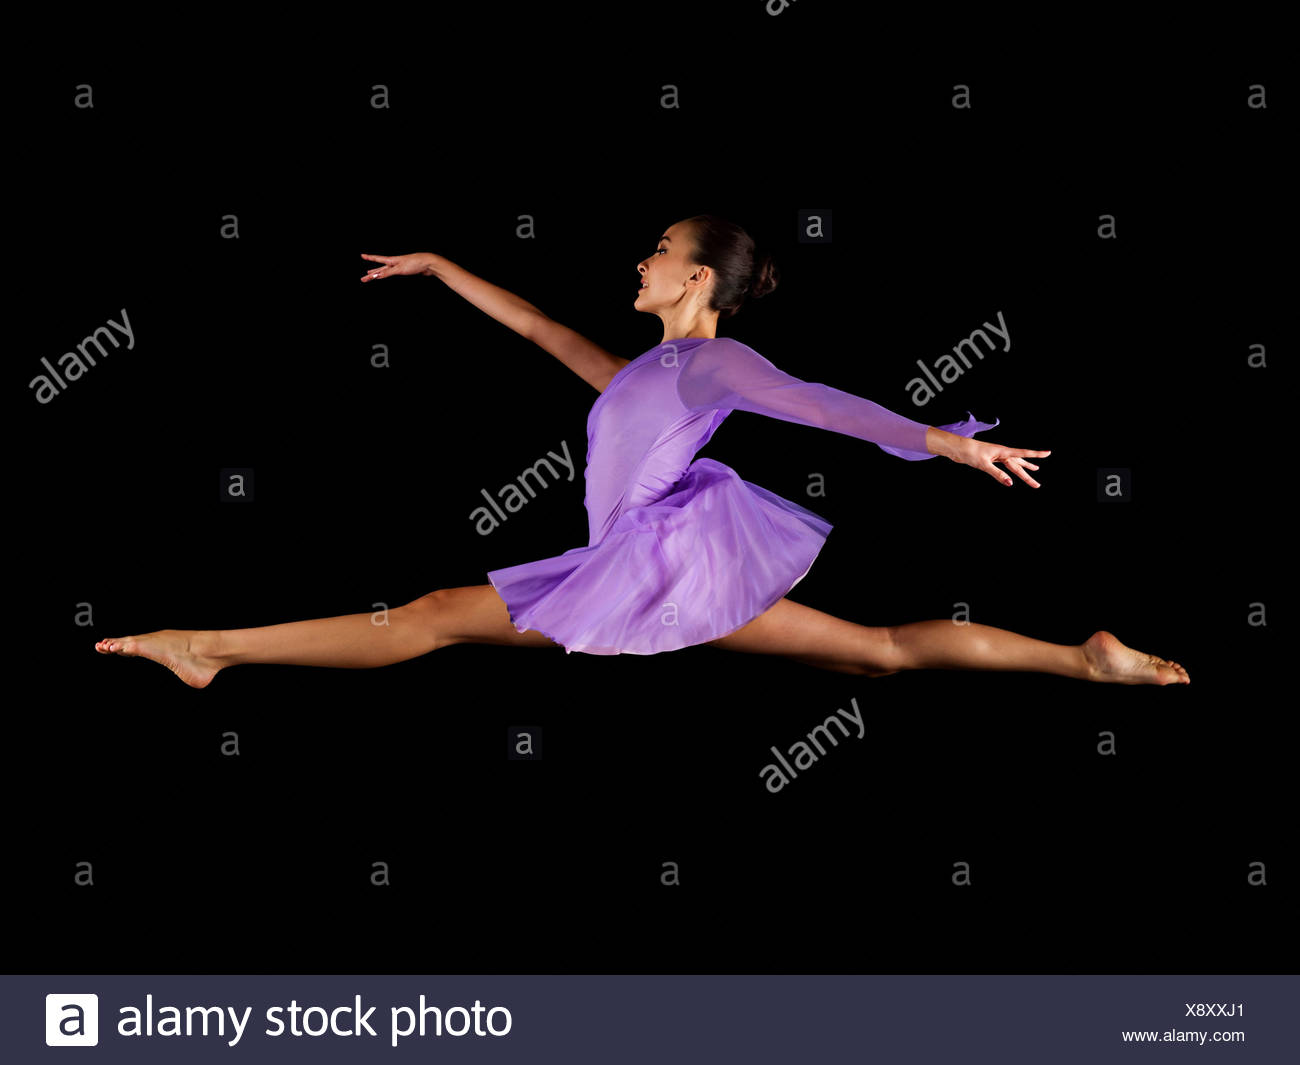 Ballerina, die den Spagat in der Luft zu tun Stockfotografie - Alamy